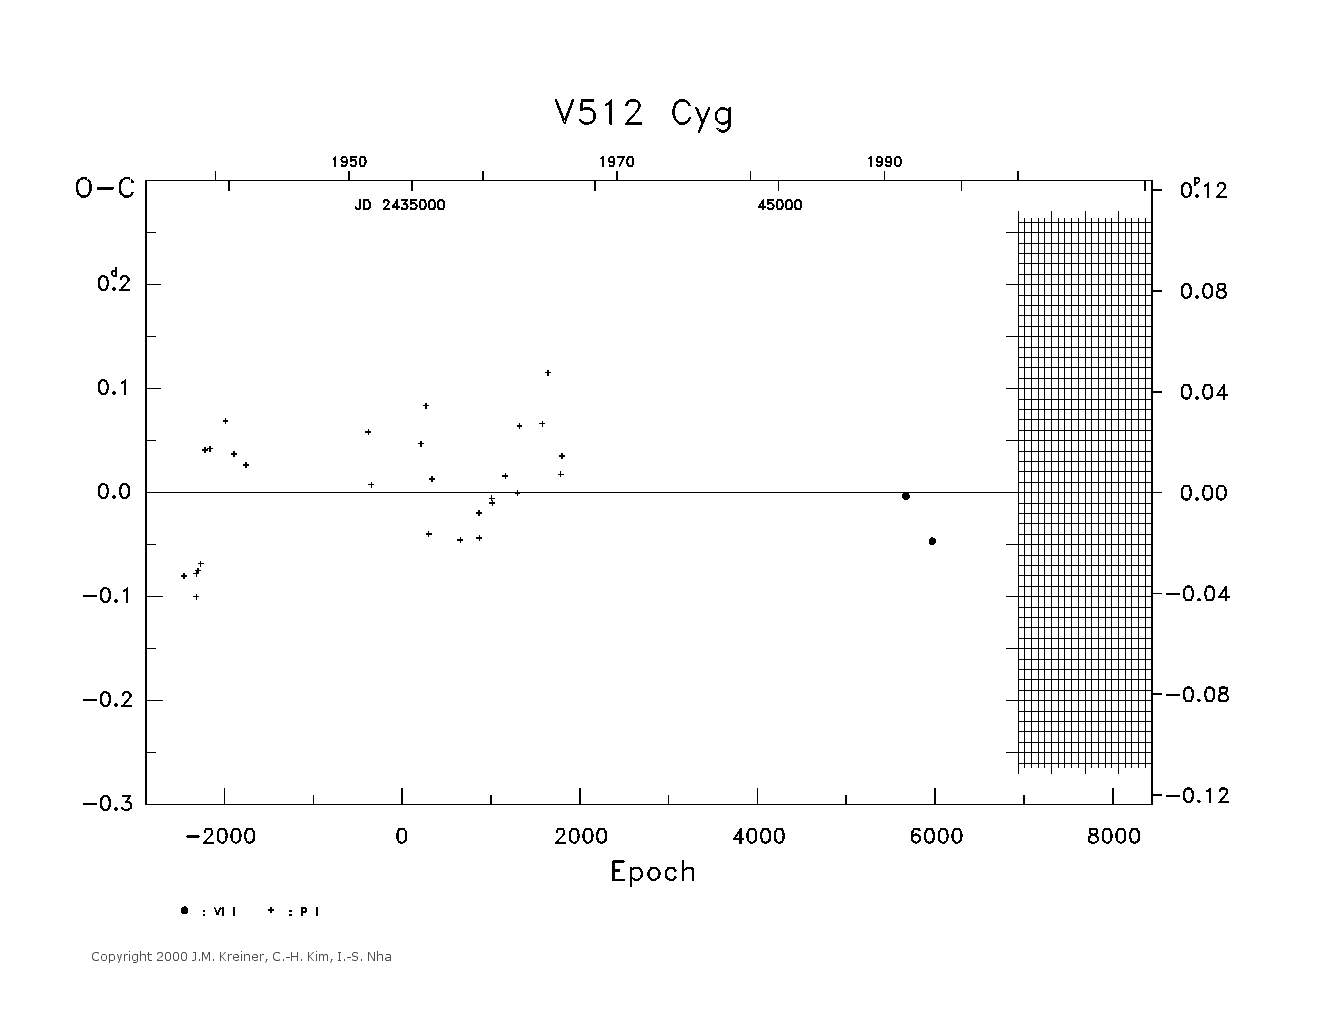 [IMAGE: large V512 CYG O-C diagram]